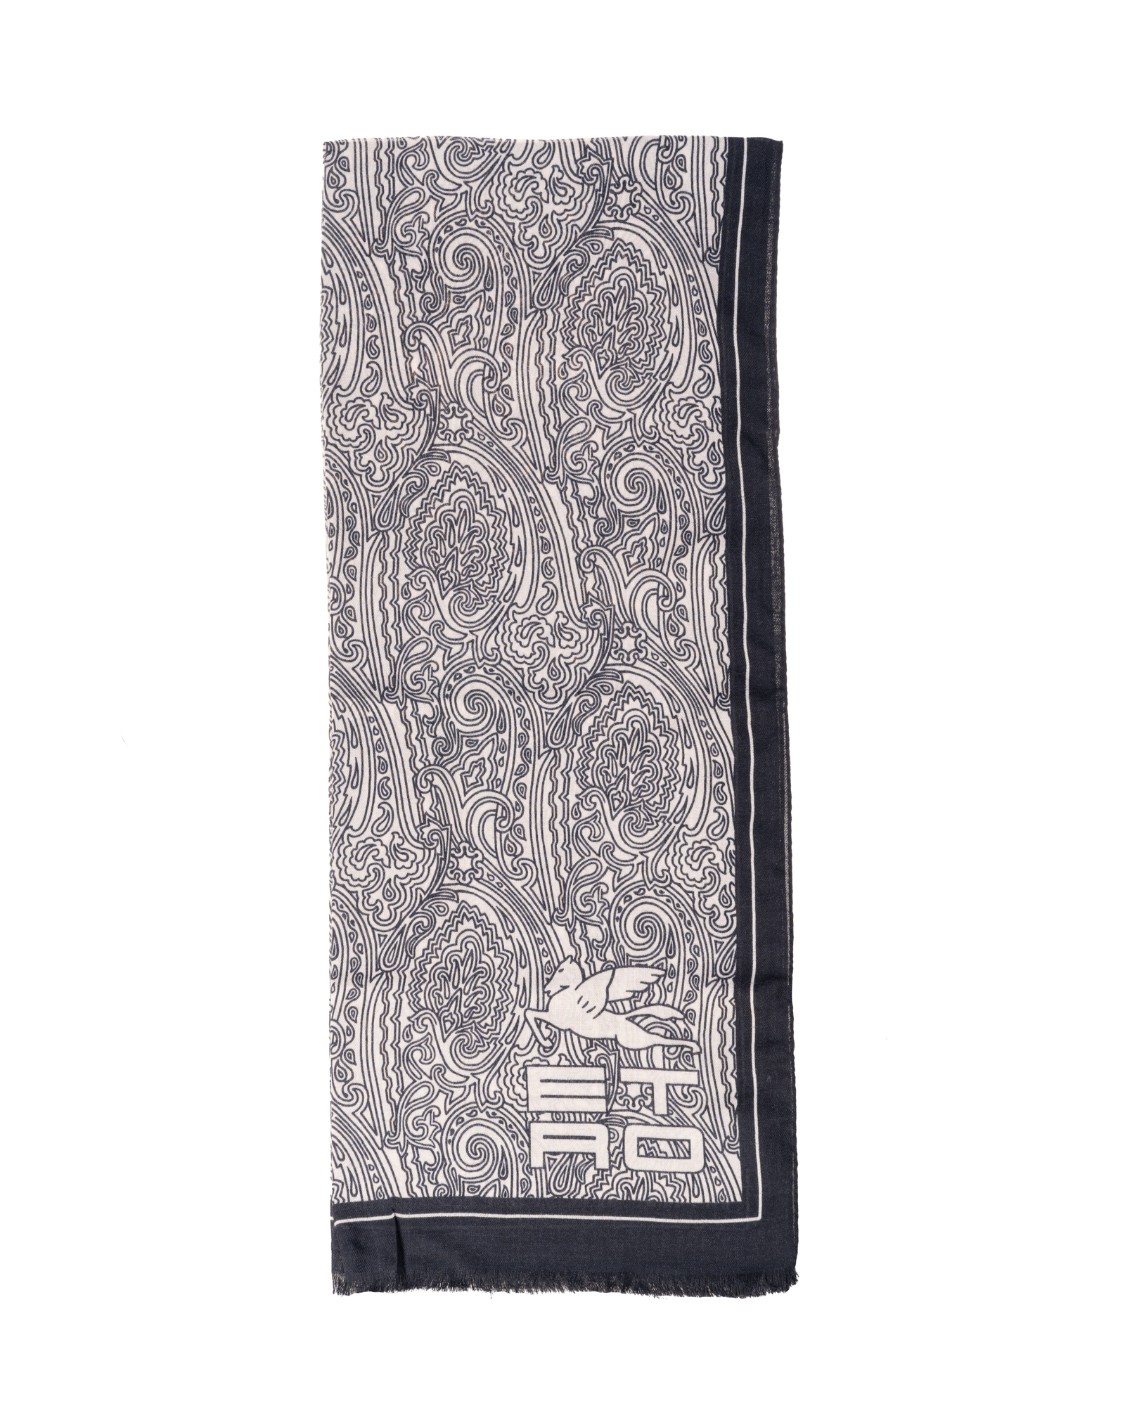 shop ETRO Sales Sciarpa: Etro sciarpa in lana e seta, decorata da una stampa che interpreta l'iconico disegno Paisley in stile grafico, è impreziosita da logo ETRO CUBE e da un bordo a contrasto.
Dimensioni: 70 x 170cm.
Composizone: 70% lana, 30% seta.
Made in Italy.. 10007 4516-0001 number 5330225